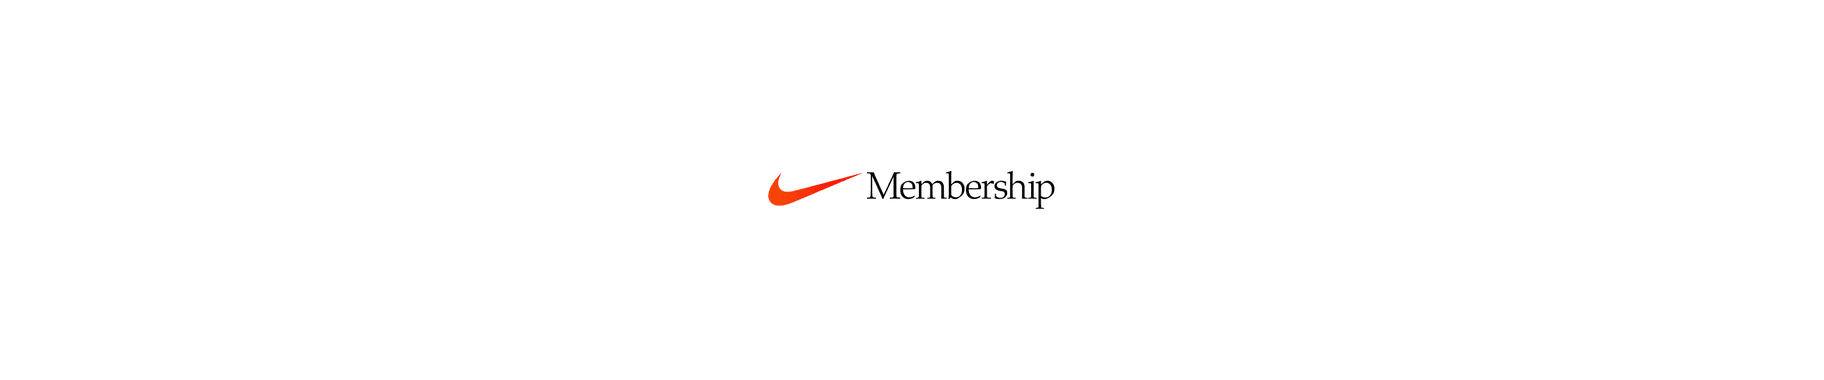 Nike Member Benefits: Member Rewards & offers